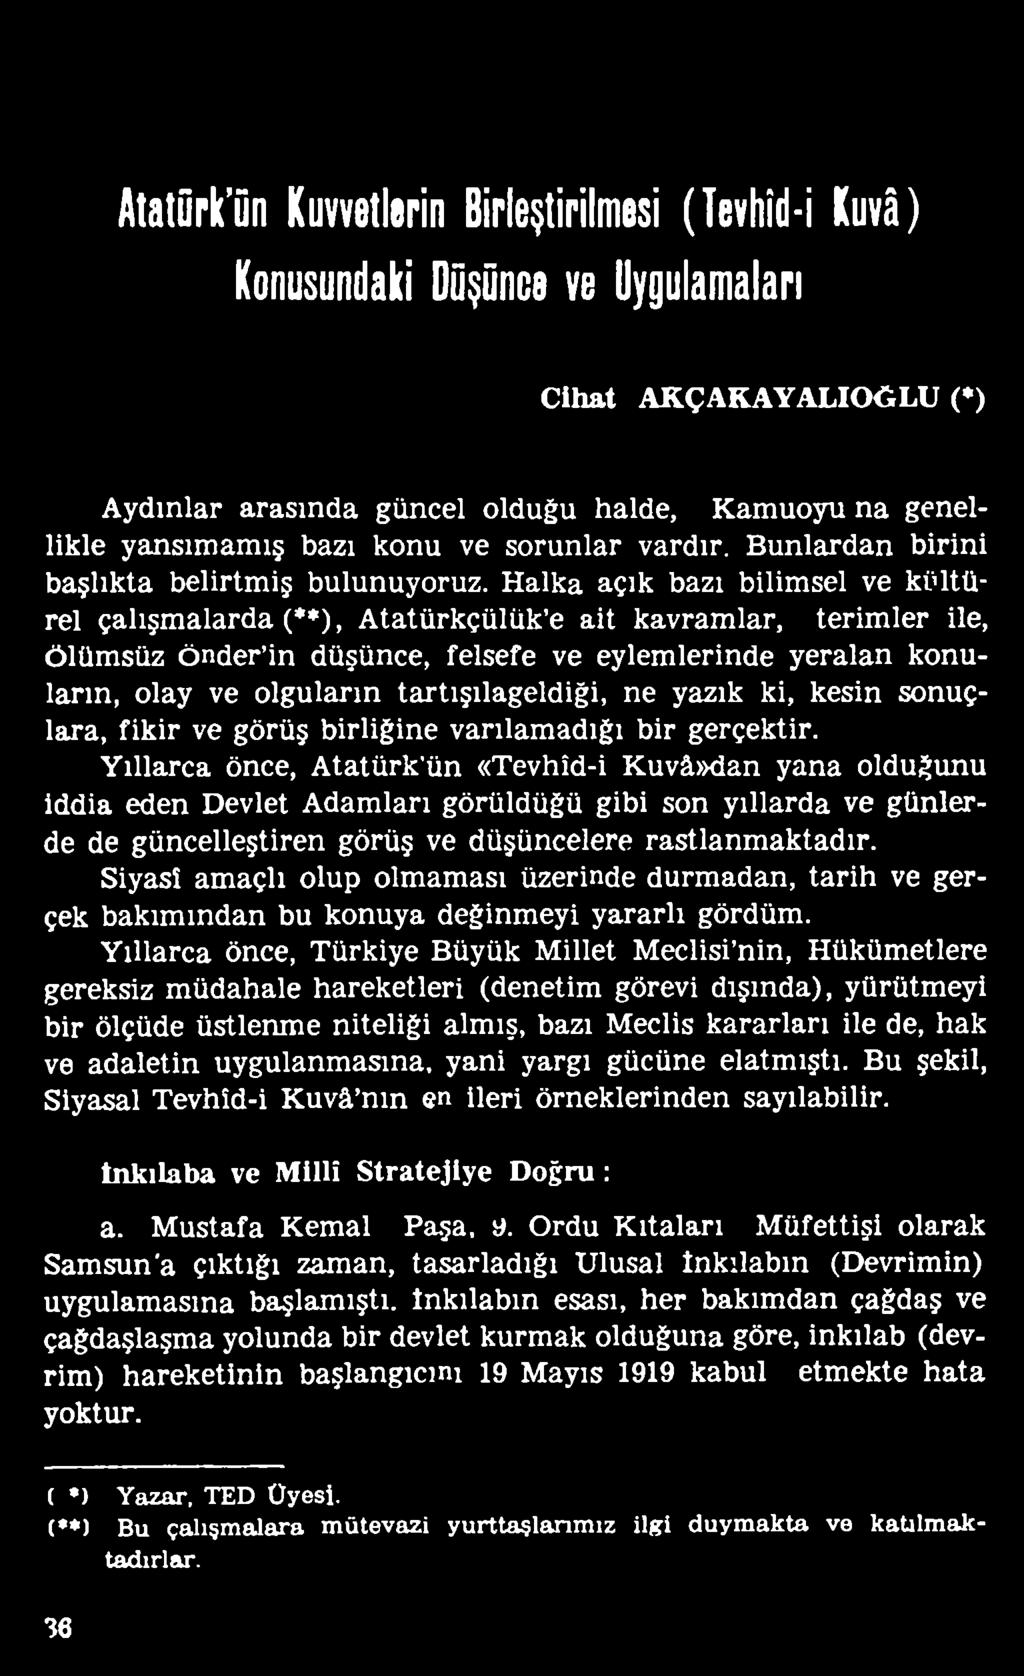 Yıllarca önce, Atatürk ün «Tevhîd-i Kuvâ»dan yana olduğunu iddia eden Devlet Adamları görüldüğü gibi son yıllarda ve günlerde de güncelleştiren görüş ve düşüncelere rastlanmaktadır.